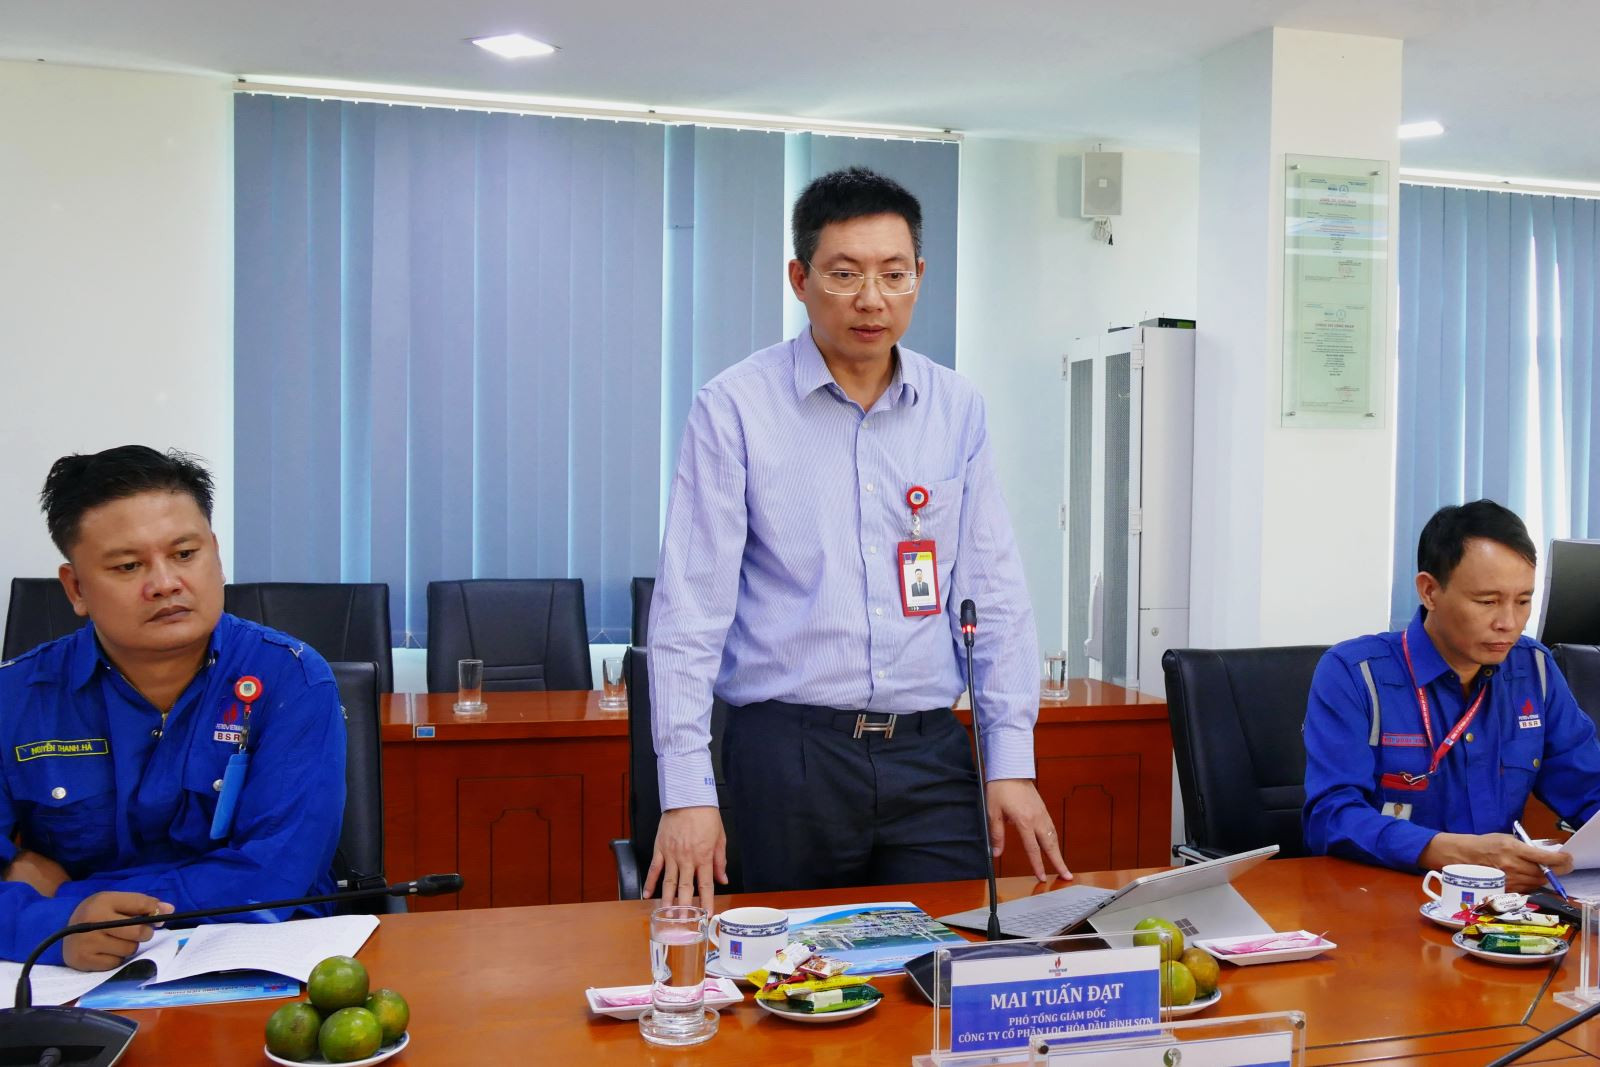 Phó Tổng giám đốc BSR Mai Tuấn Đạt báo cáo về công tác bảo vệ môi trường tại NMLD Dung Quất.